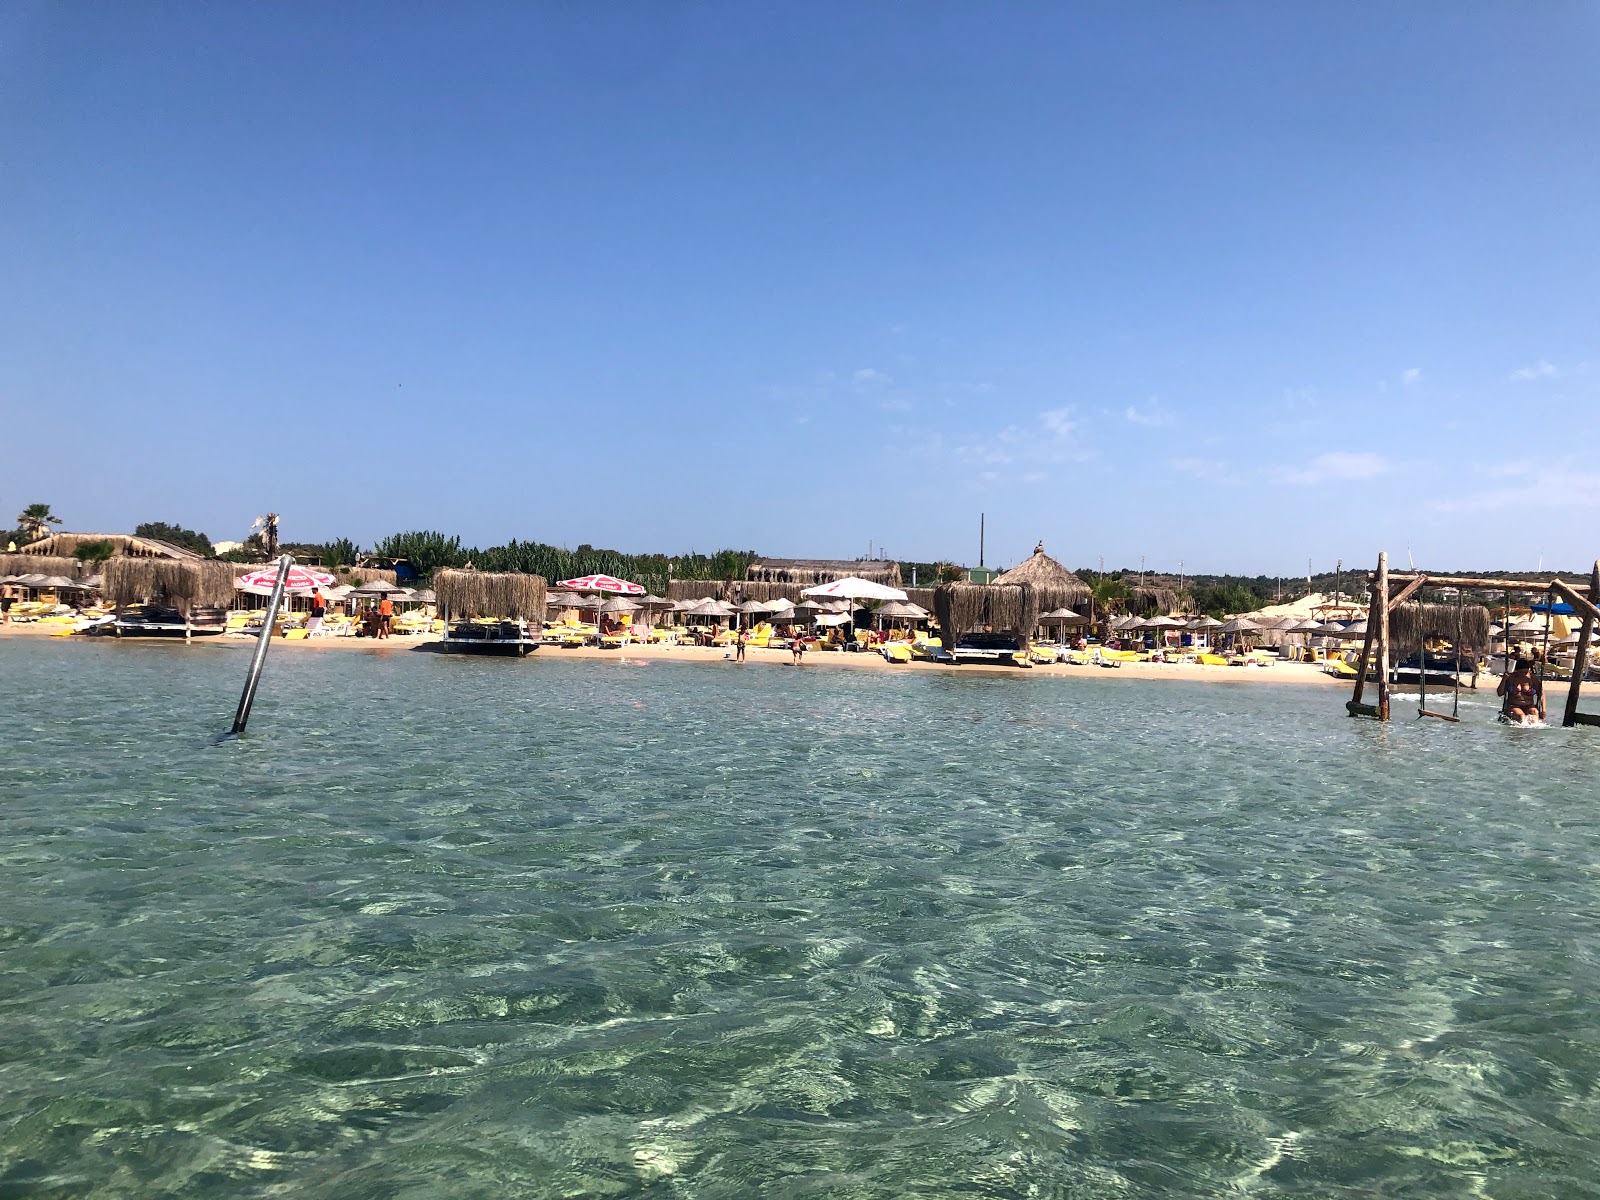 Dharma Plaj Kulübü'in fotoğrafı plaj tatil beldesi alanı